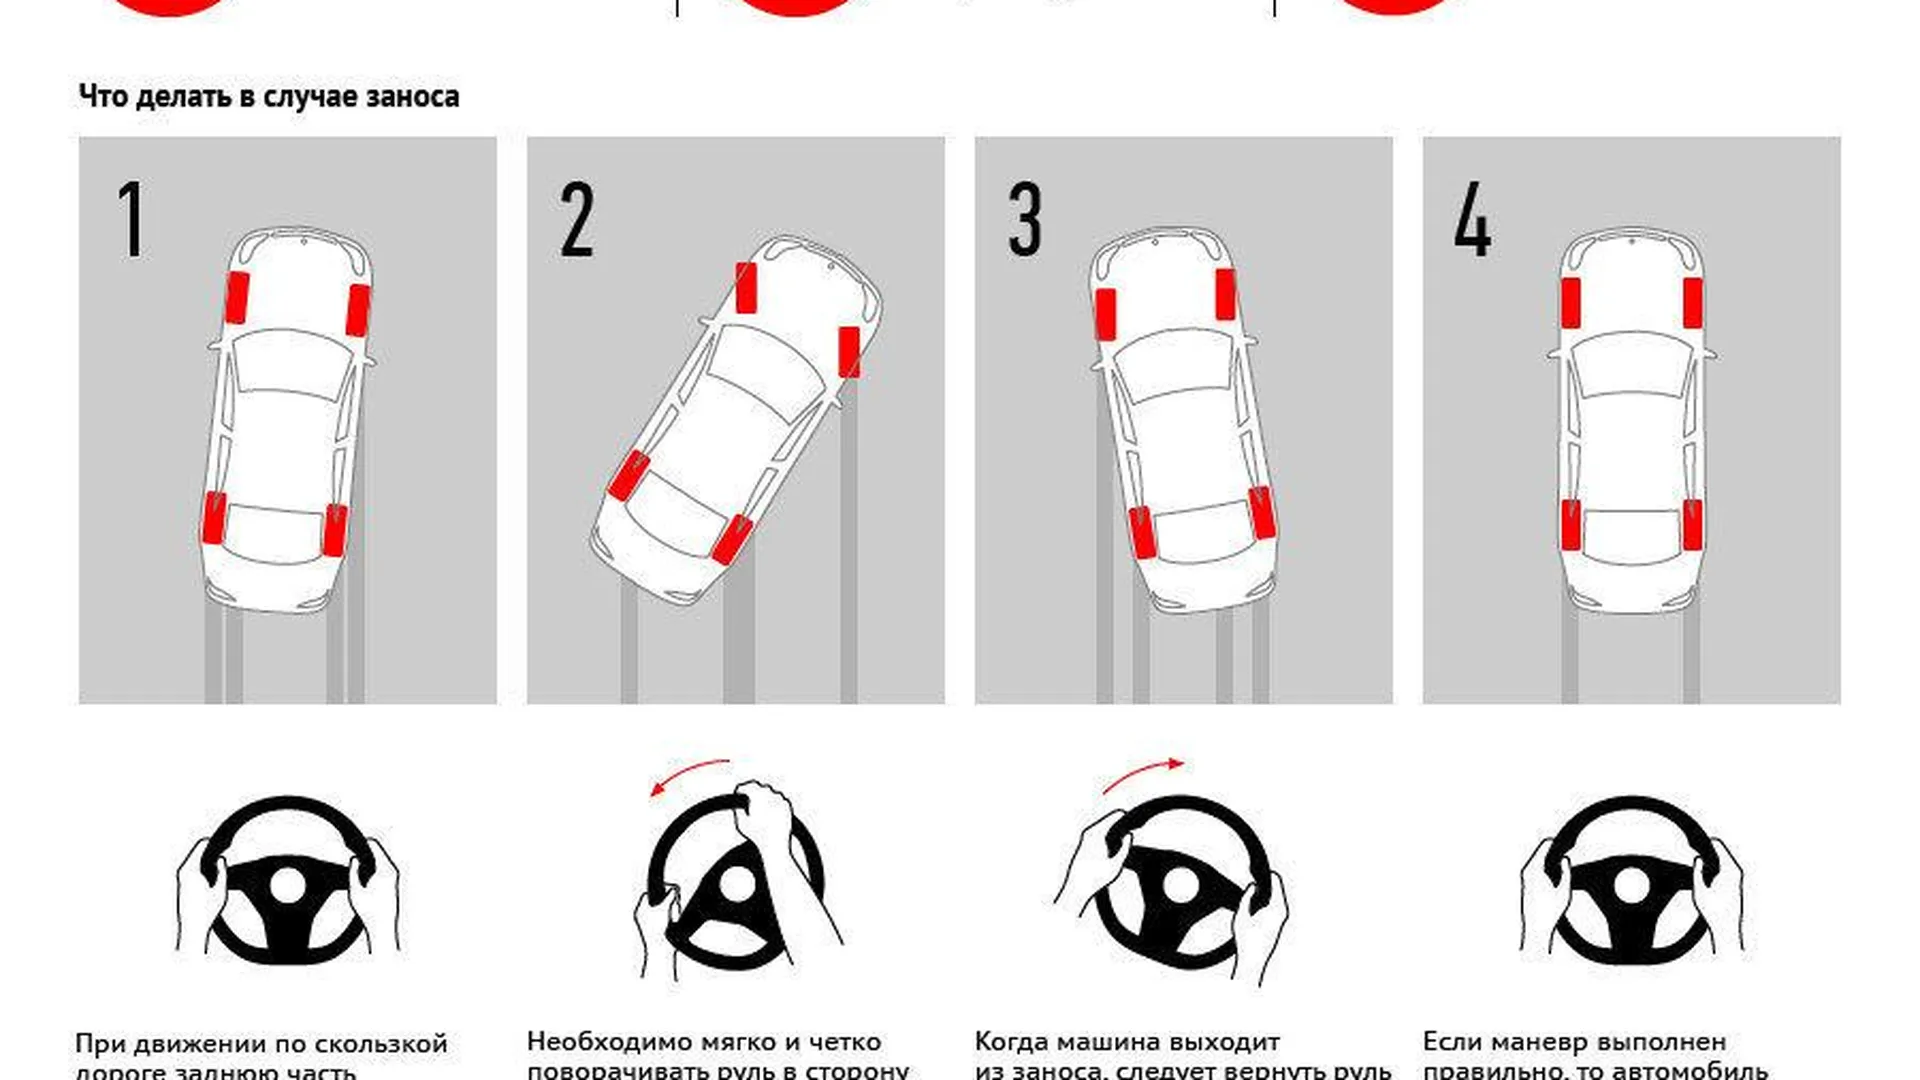 Победа над заносом: правила вождения на заснеженной дороге